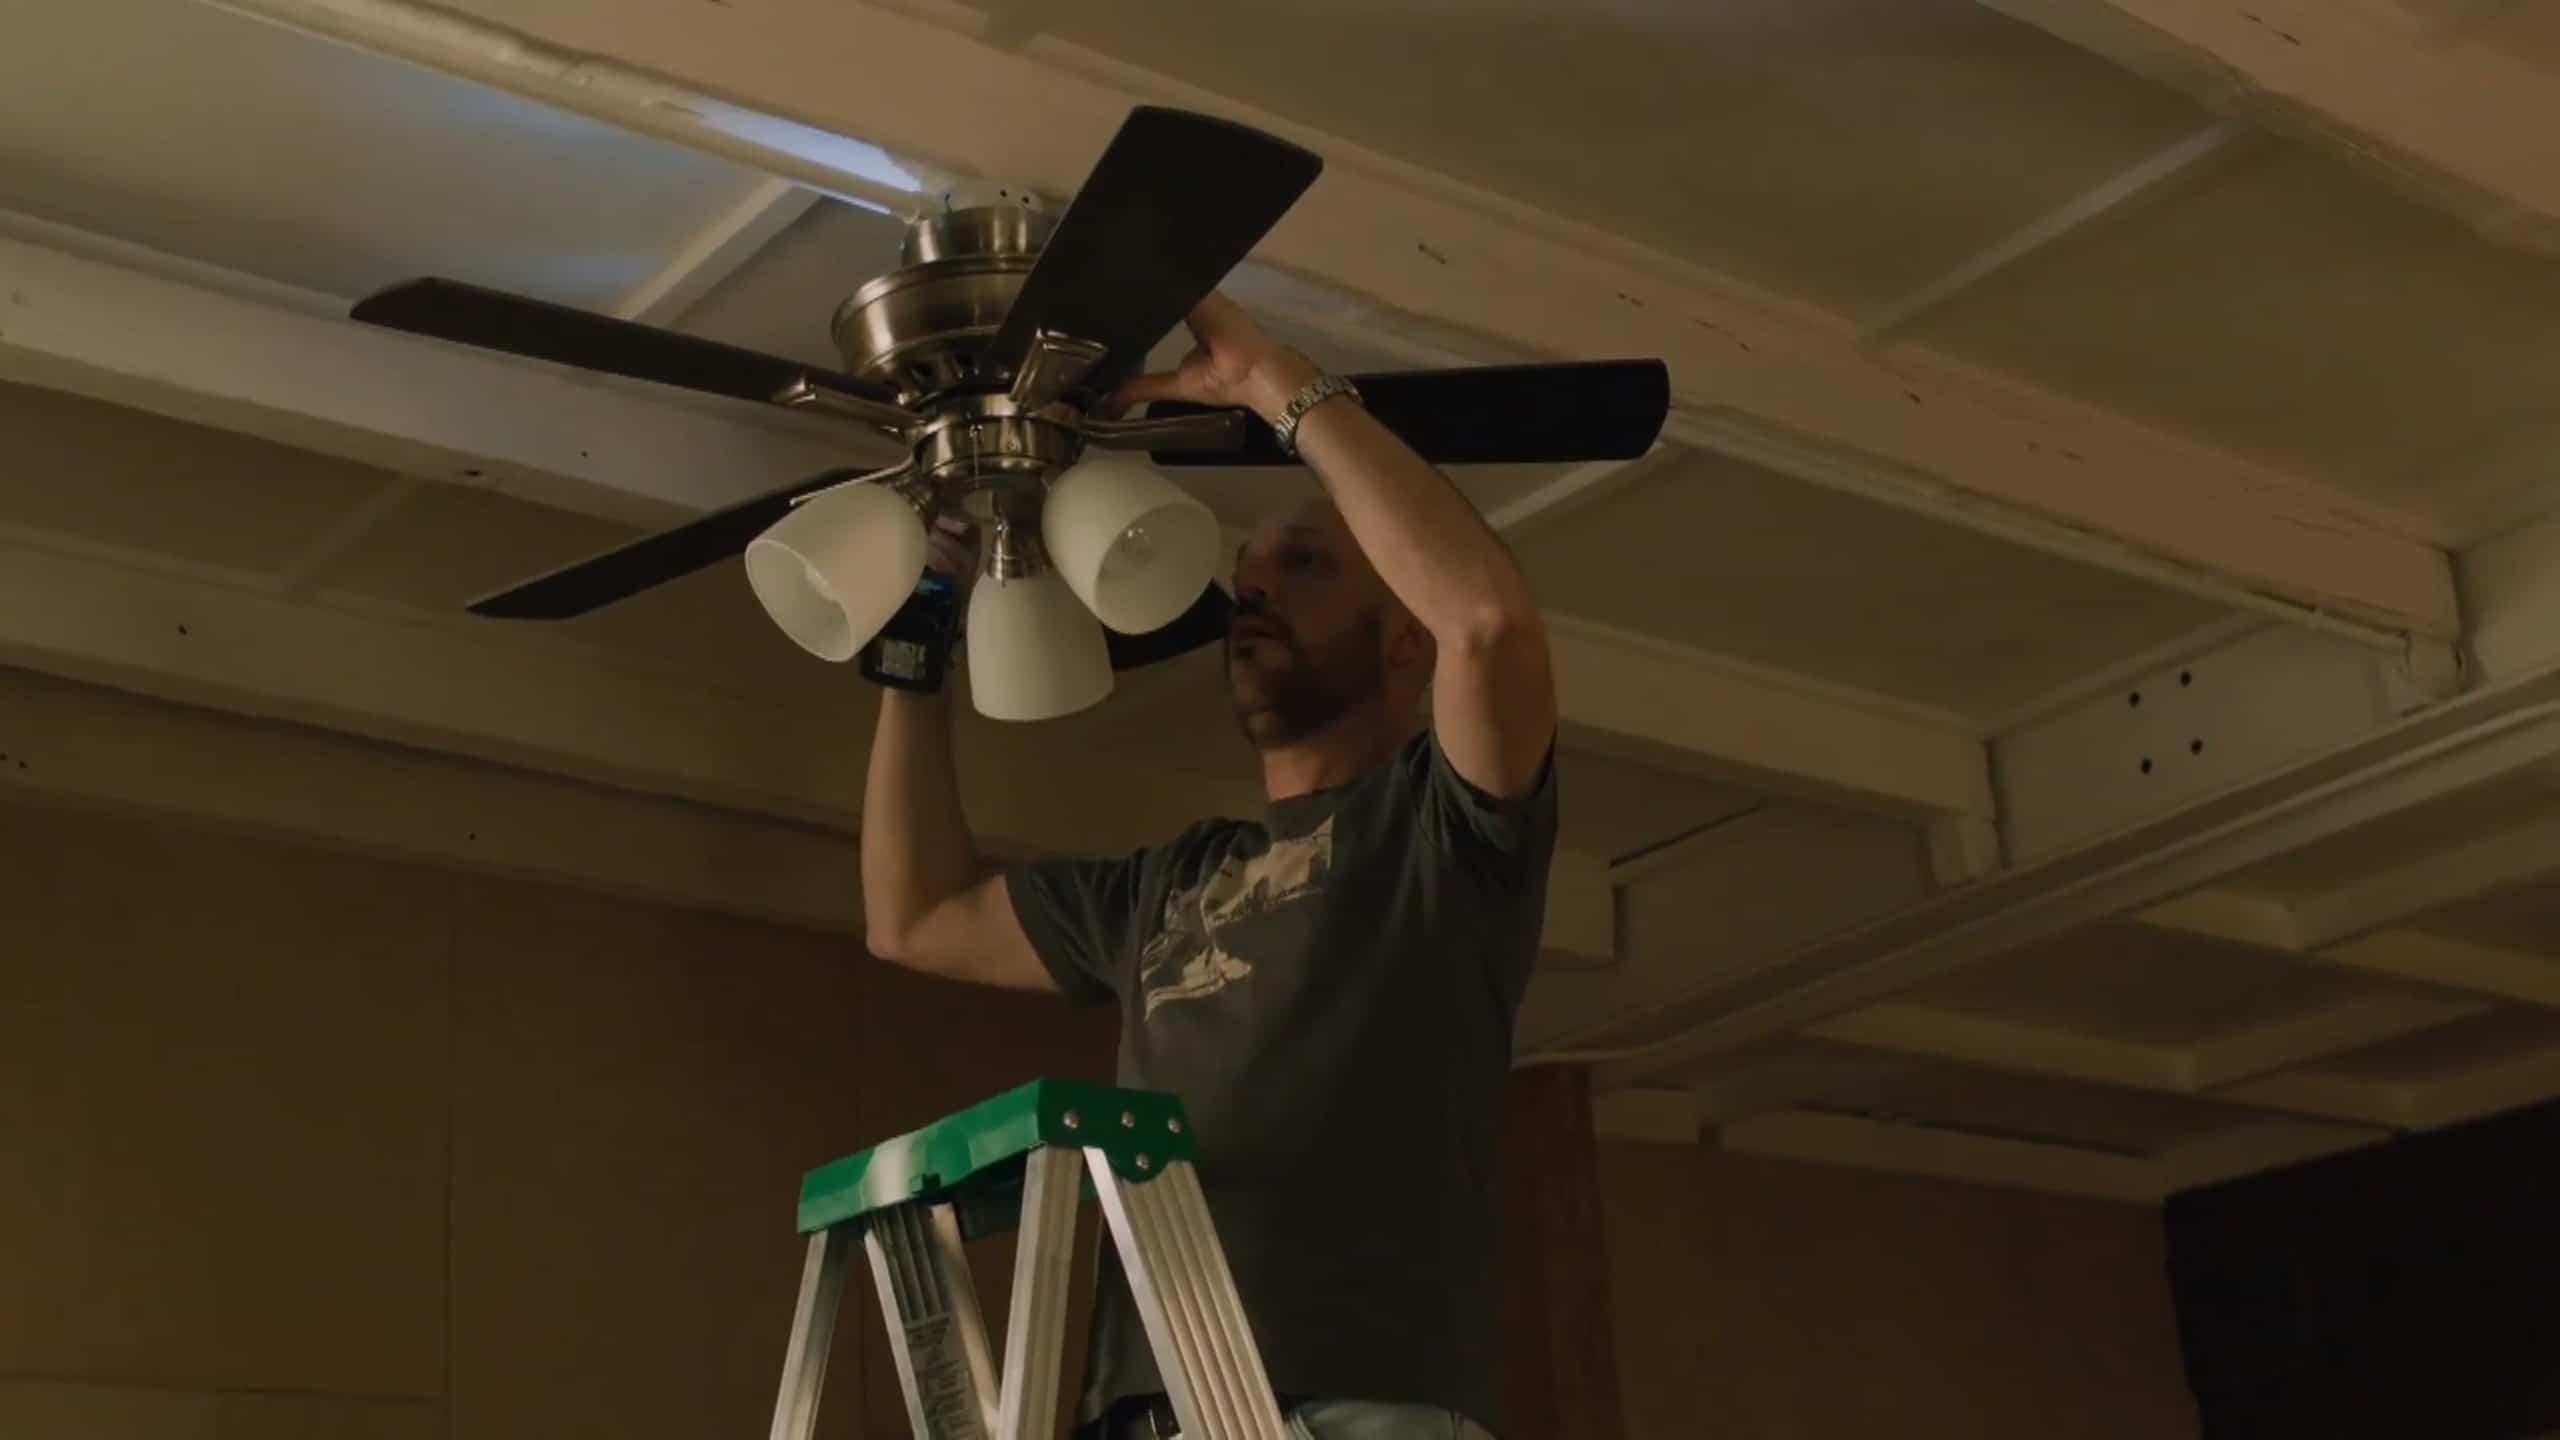 Martin installe un ventilateur au plafond, le résultat